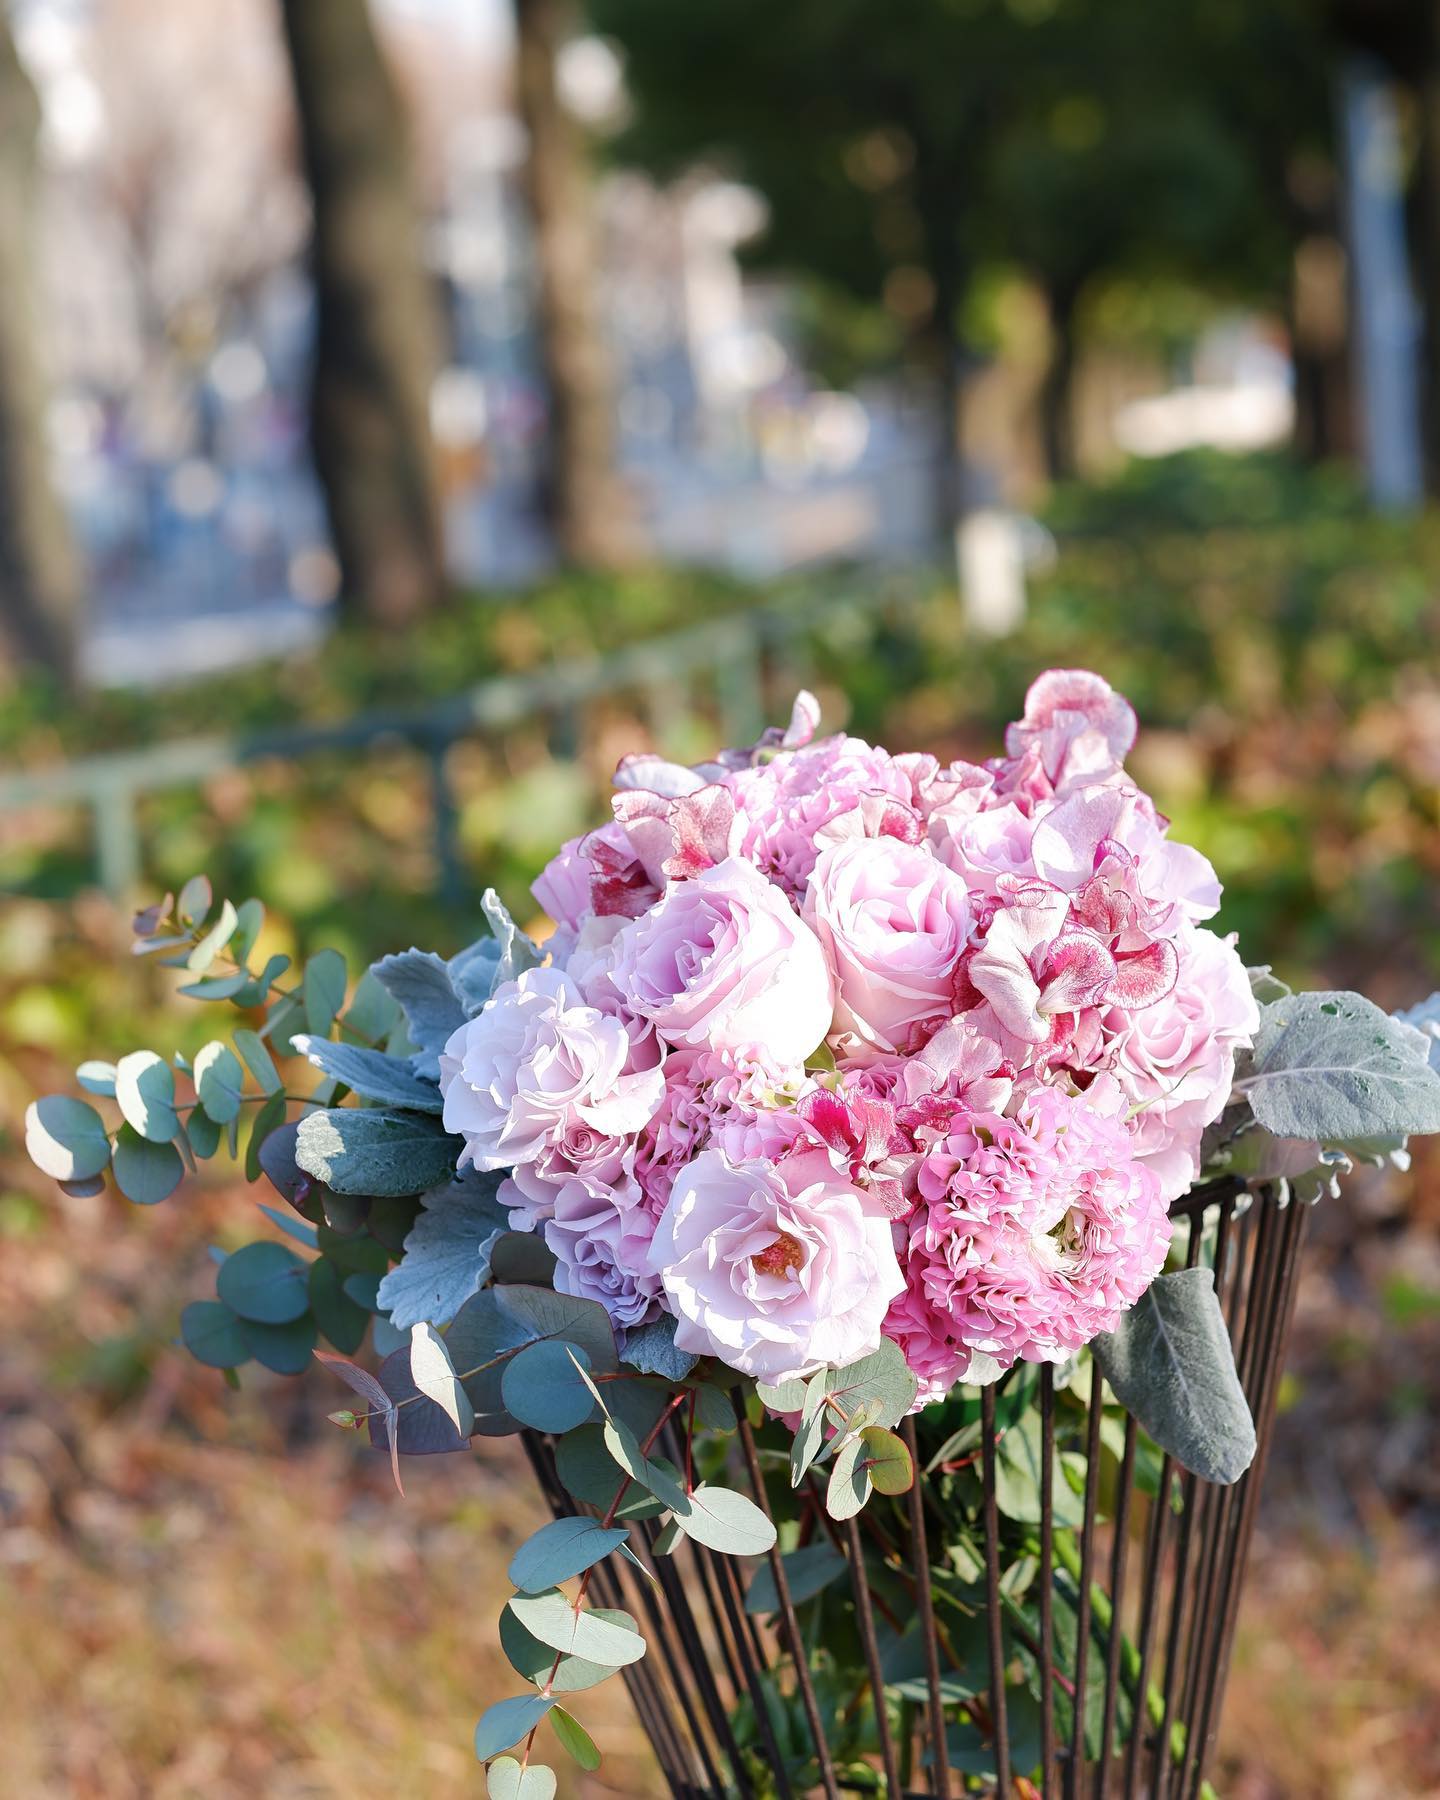 淡いピンクのグラデーションブーケ体は寒いですが、お花はすっかり春です♪♪電話、メール、ウェブサイトでご注文できます。.︎ 052-261-8791︎ kazuto@posy-nagoya.co.jp.